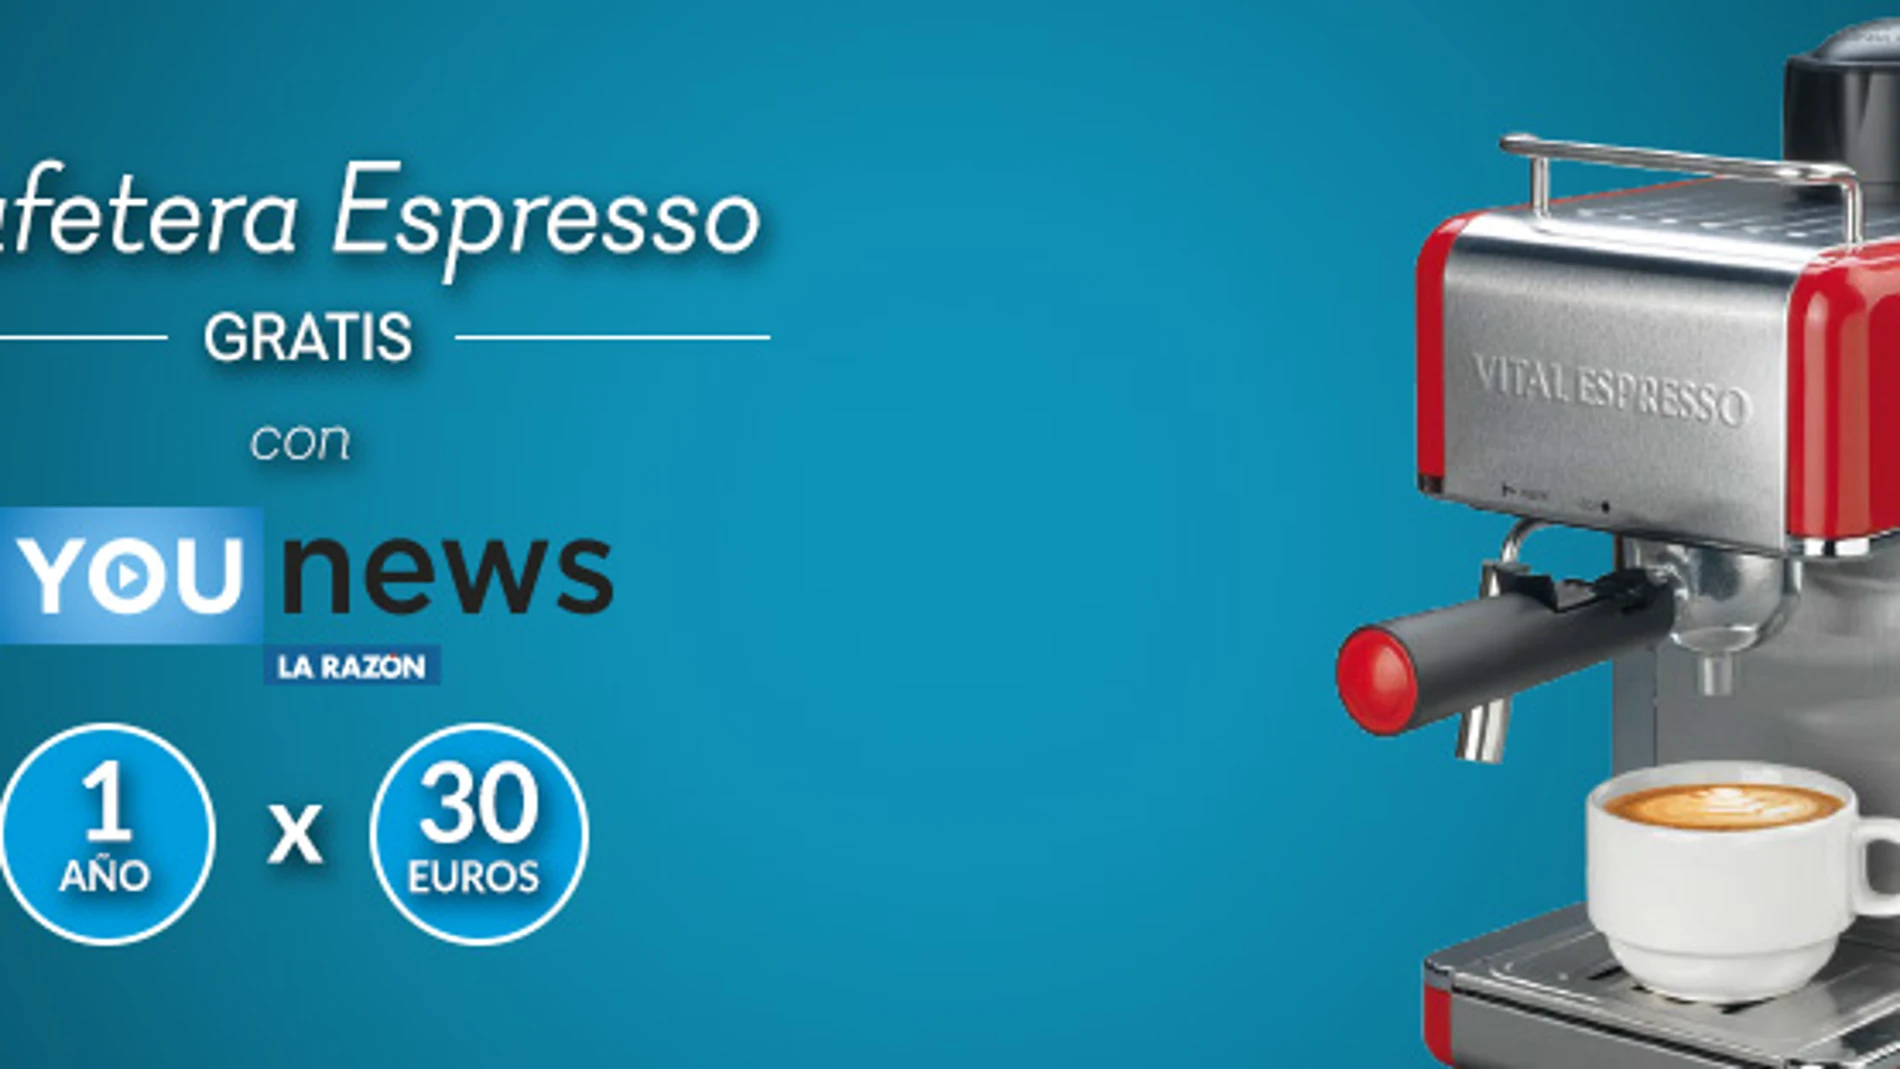 Consigue una cafetera gratis al suscribirte a YouNews durante un año por sólo 30€